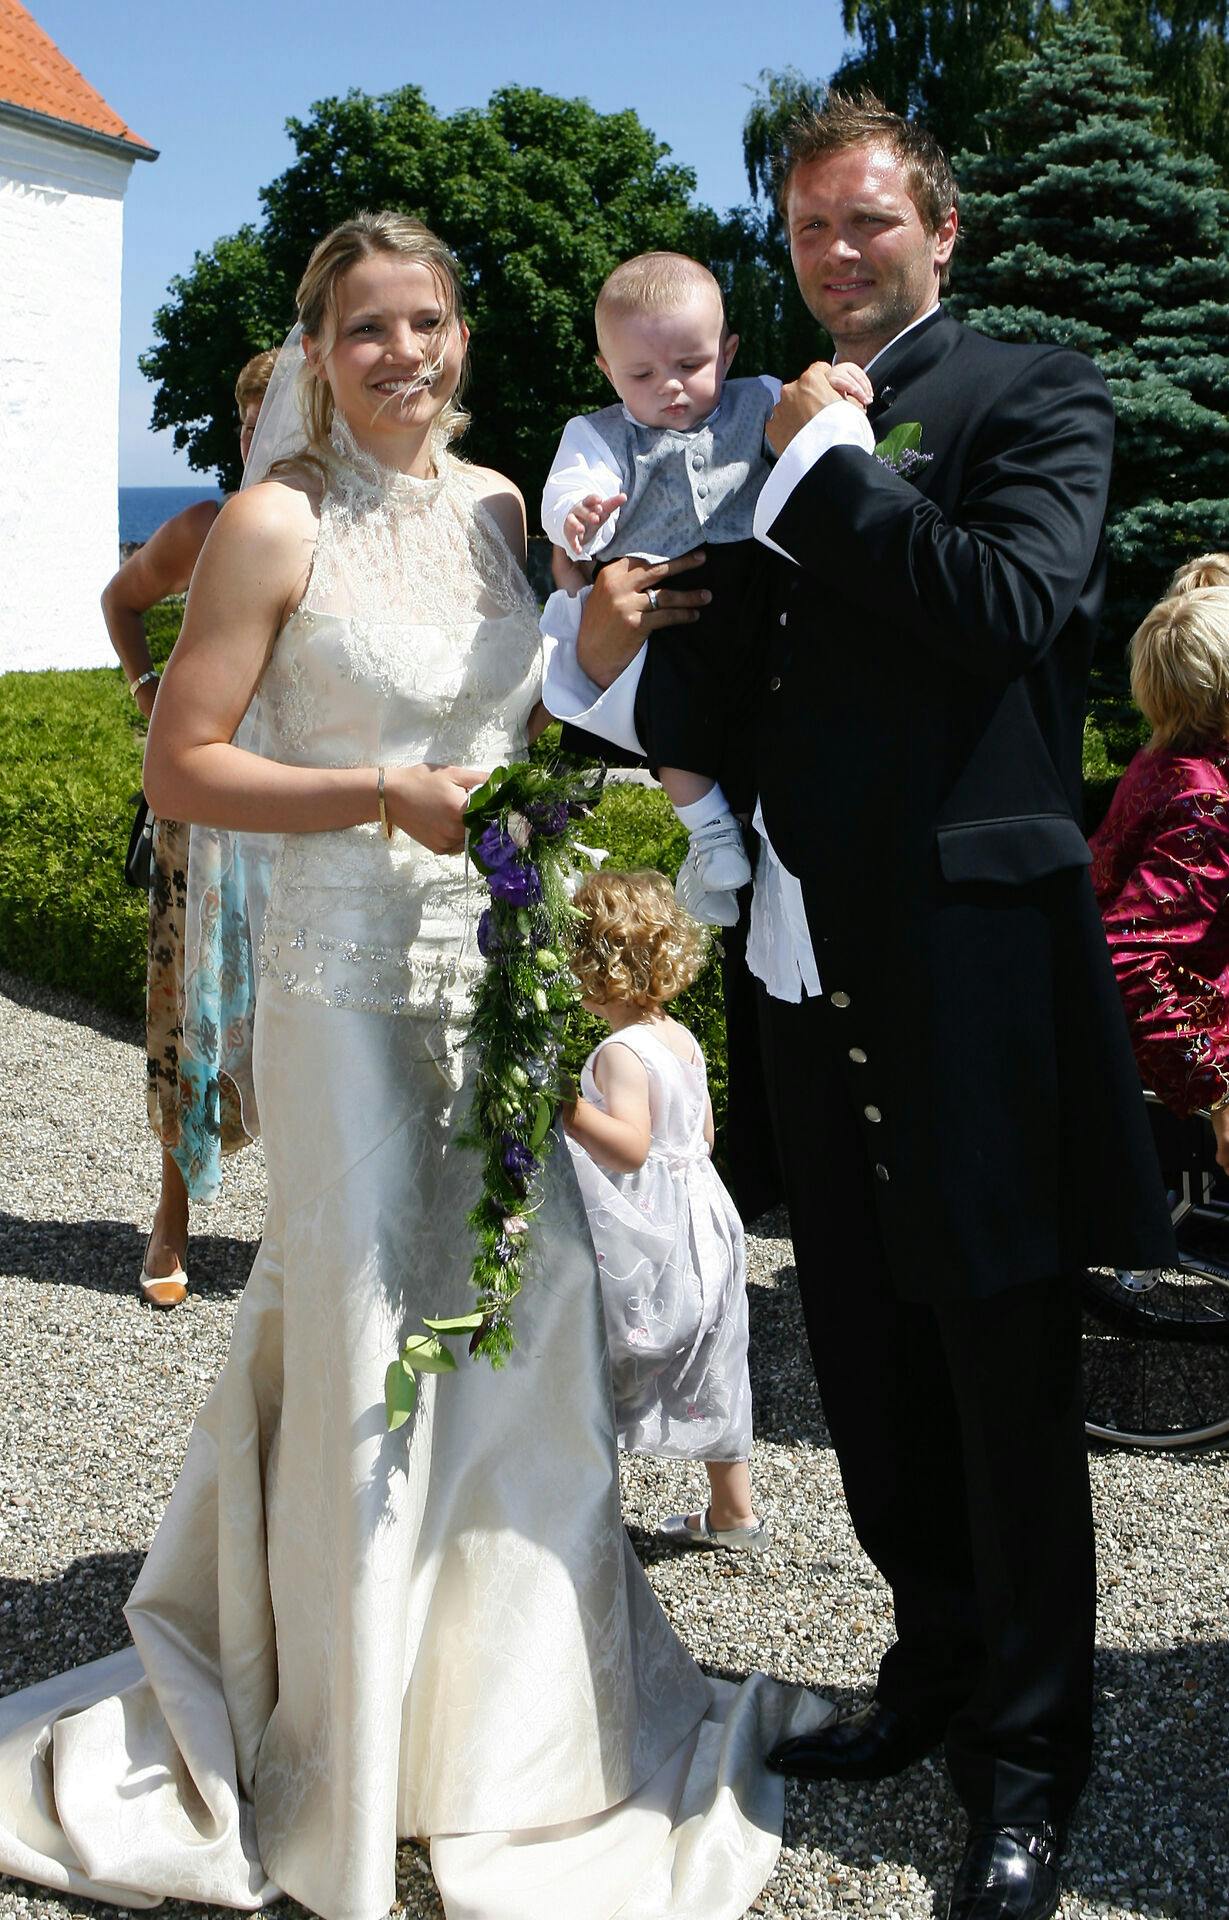 Her er vi i 2006, hvor de to håndboldstjerner Christina Roslyng og Lars Christiansen blev gift - og sønnen Frederik var med. I dag står han helt på egne ben.